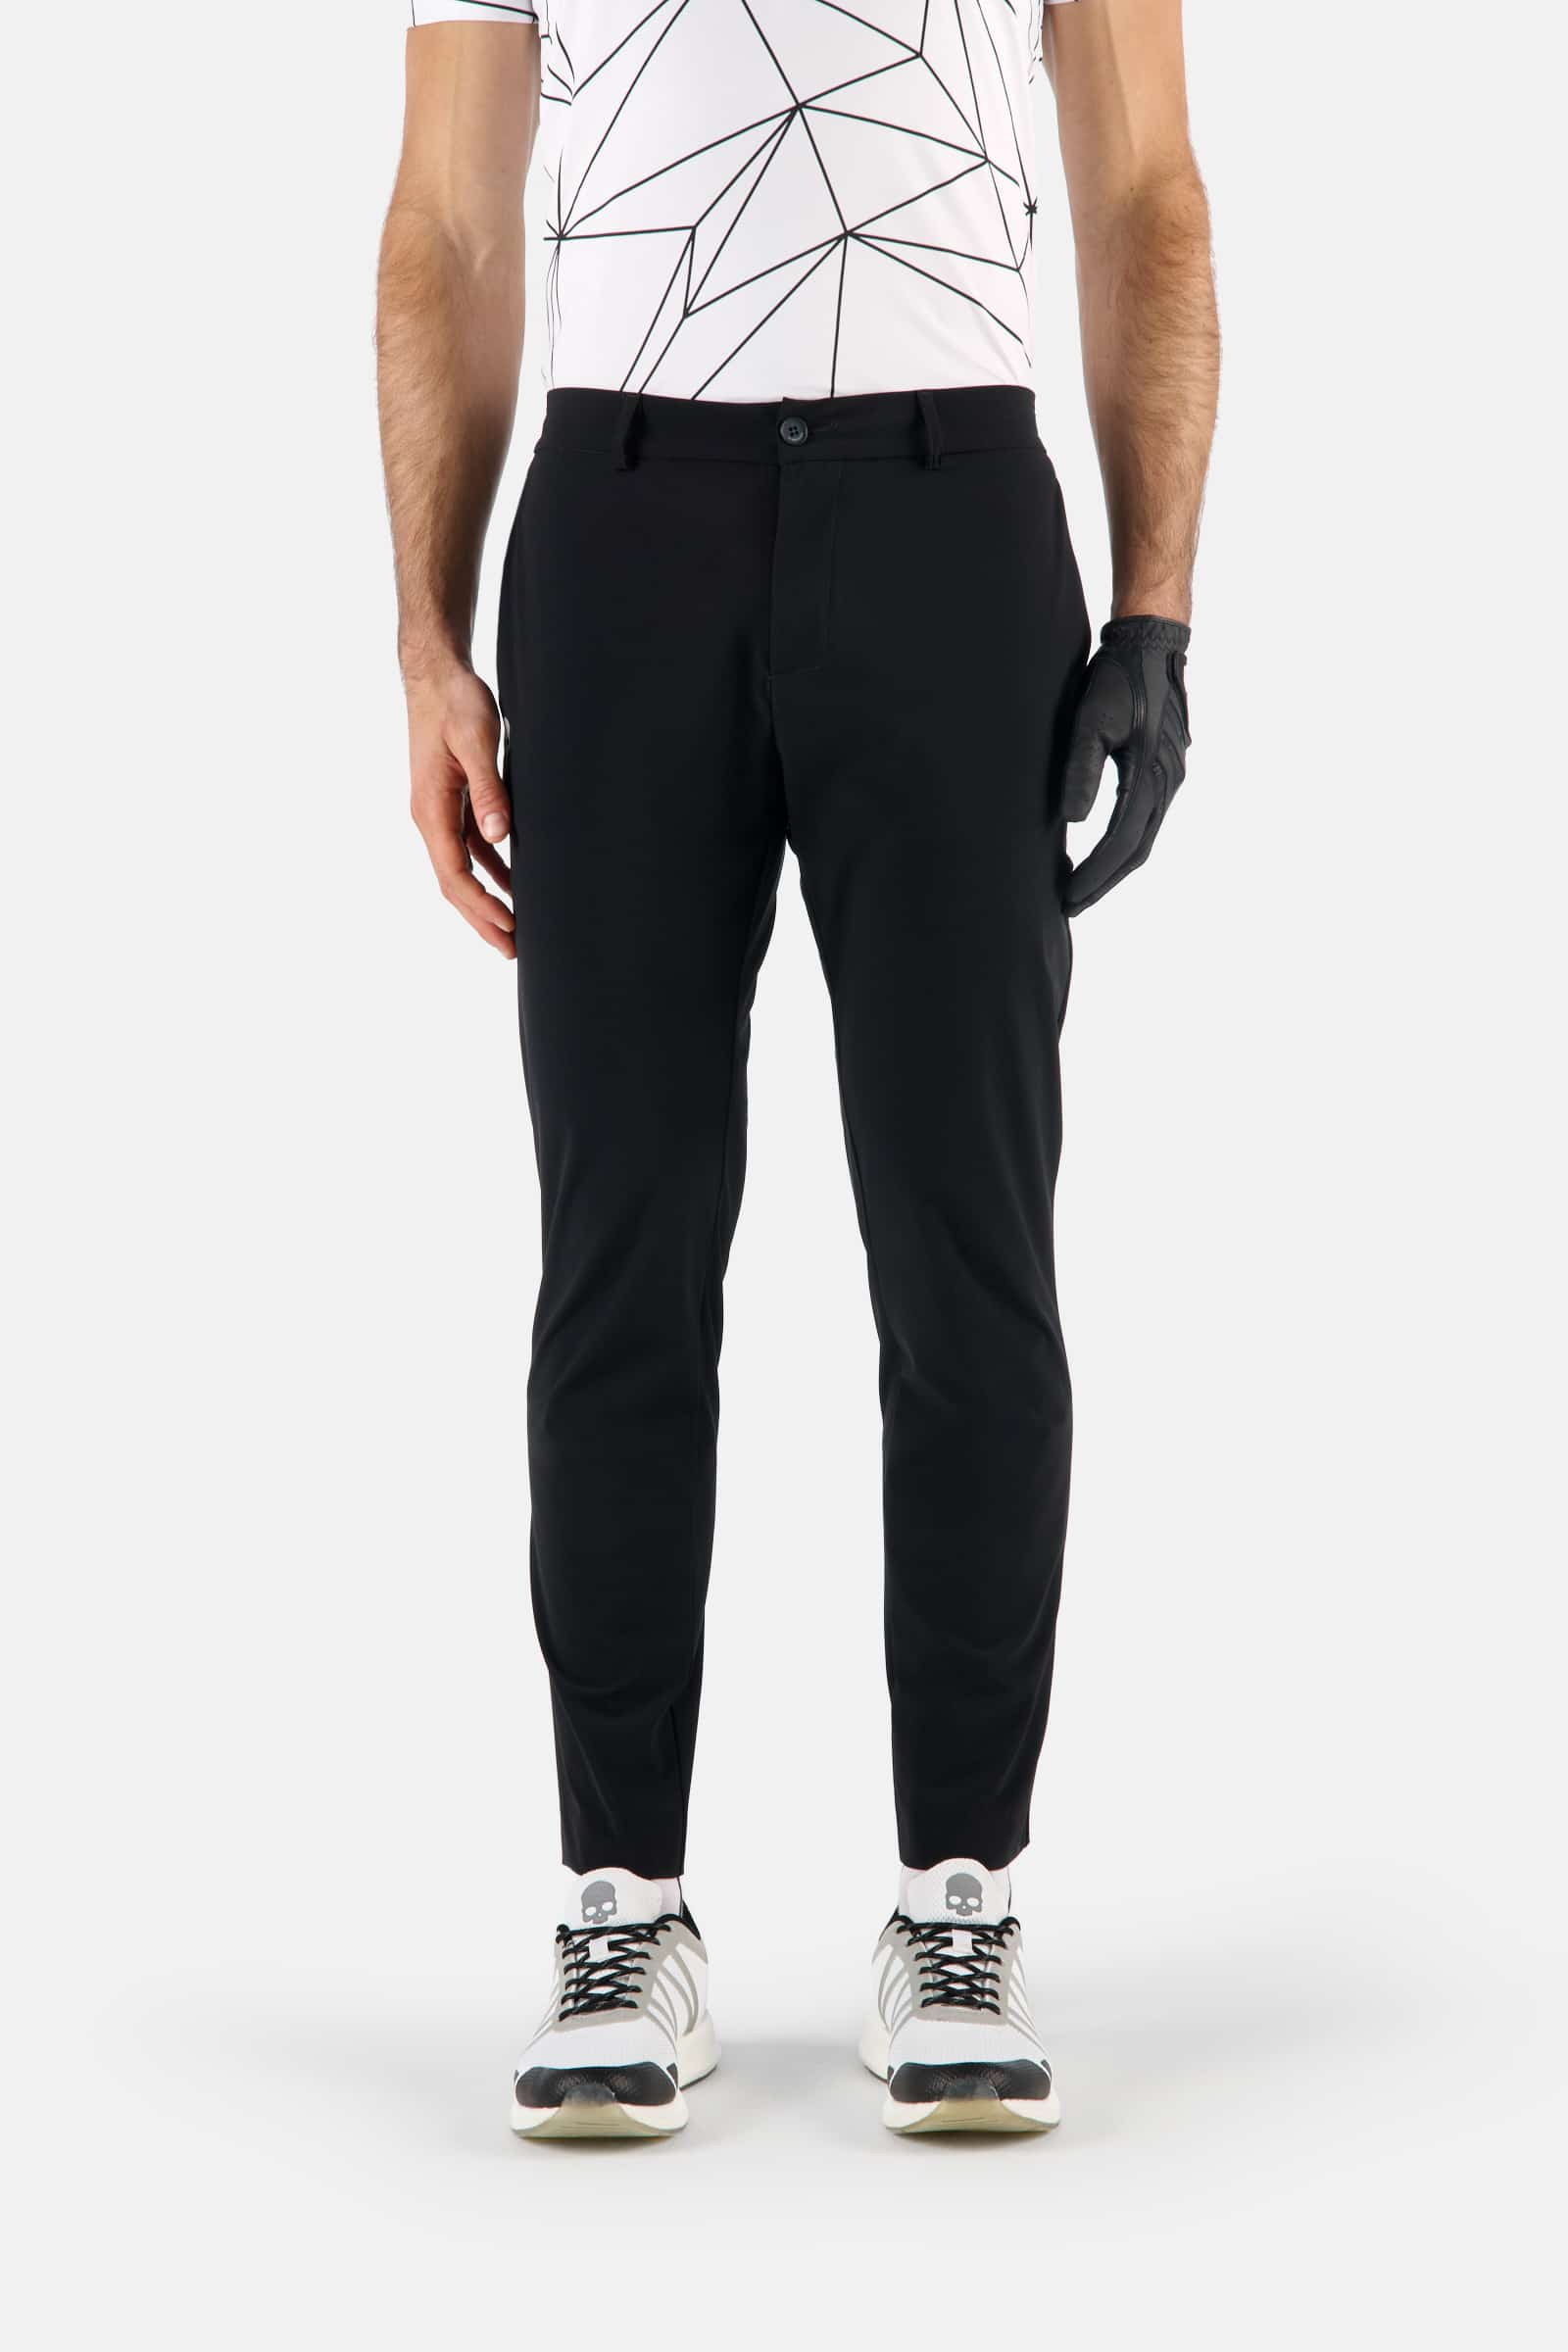 GOLF PANTS - BLACK - Abbigliamento sportivo | Hydrogen